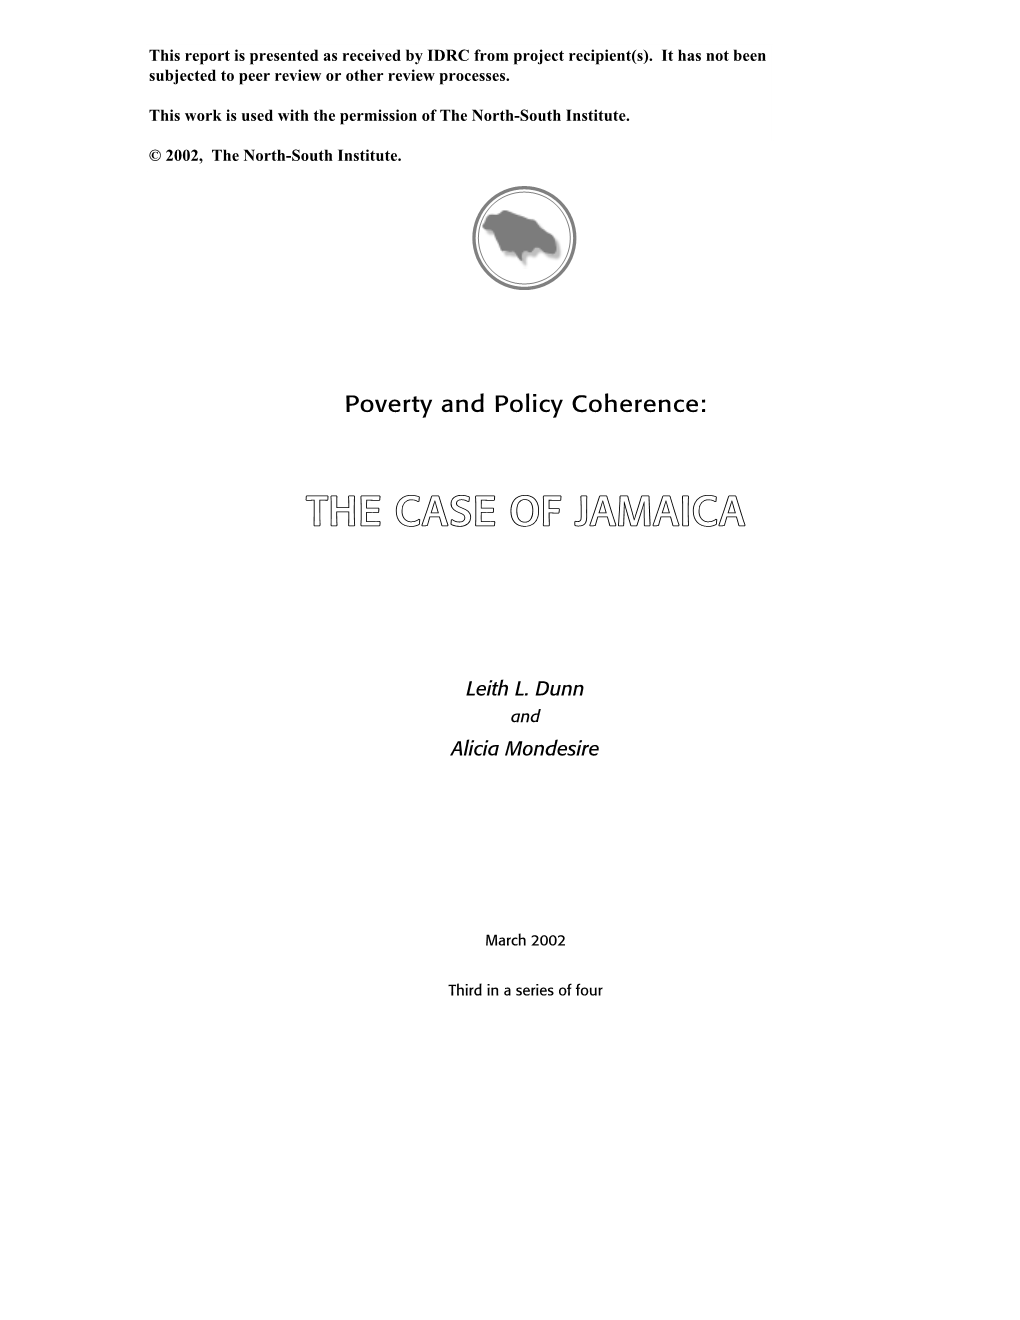 The Case of Jamaica